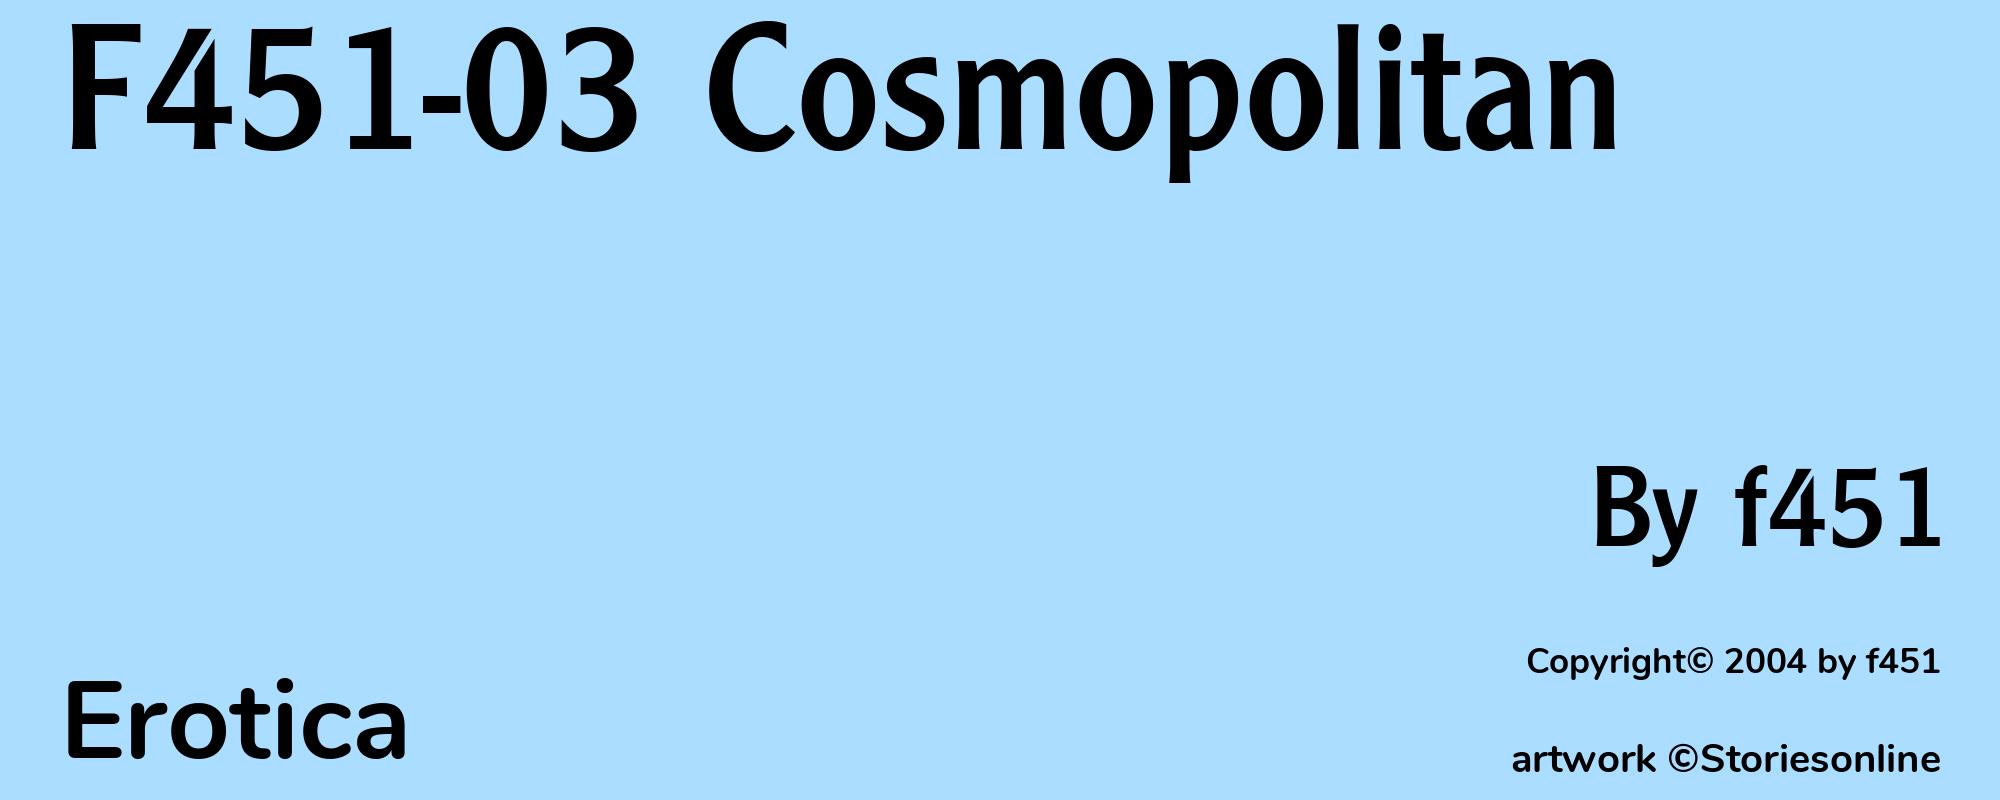 F451-03 Cosmopolitan - Cover